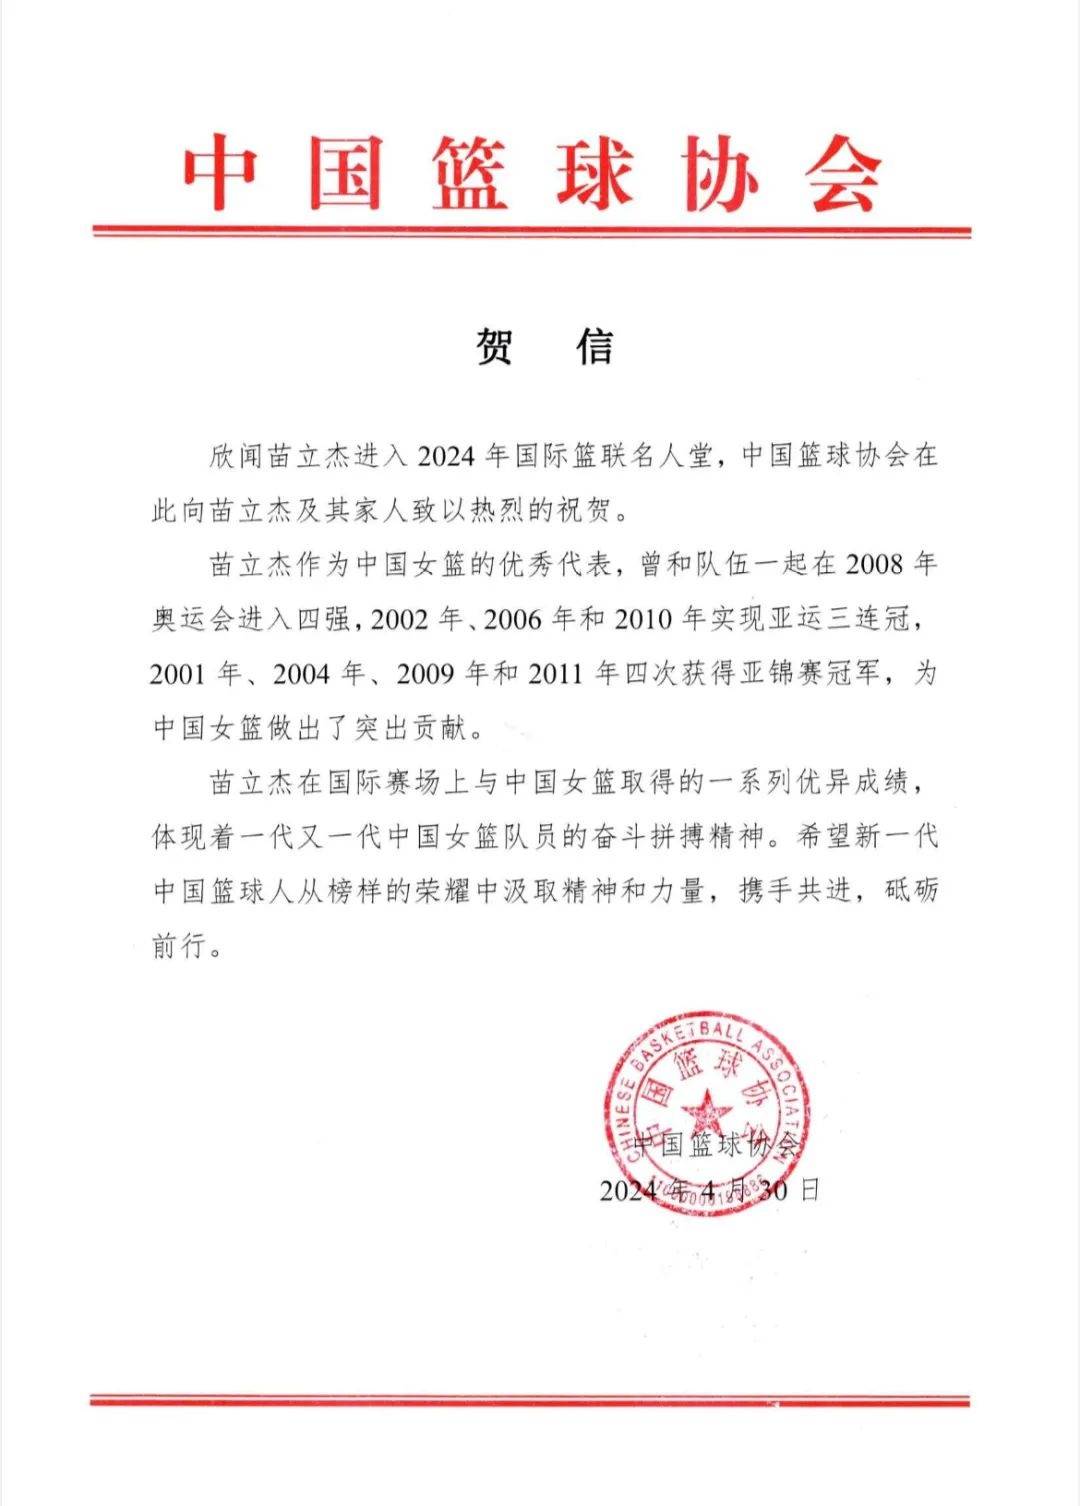 苗立杰入选国际篮联名人堂，中国篮协发贺信：她是中国女篮的优秀代表